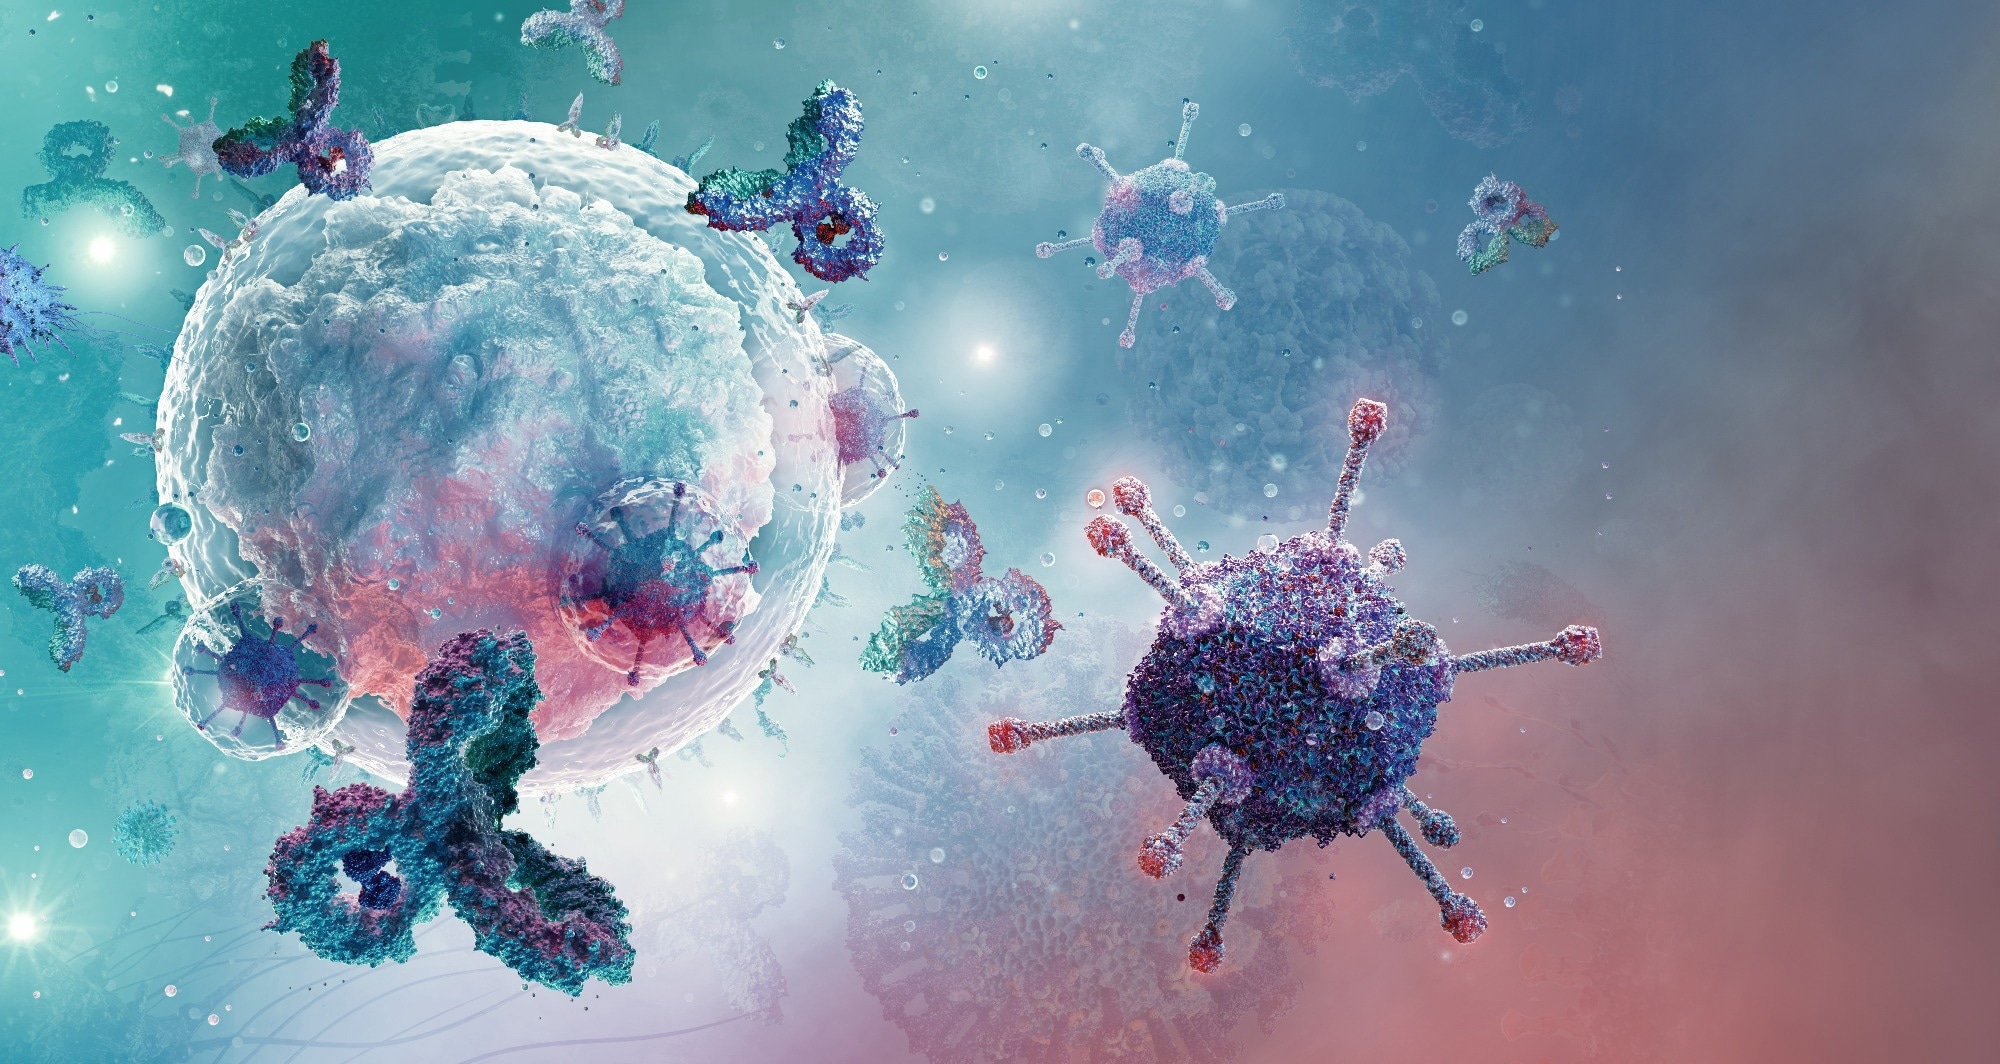 Study: Immune imprinting and next-generation coronavirus vaccines. Image Credit: Corona Borealis Studio / Shutterstock